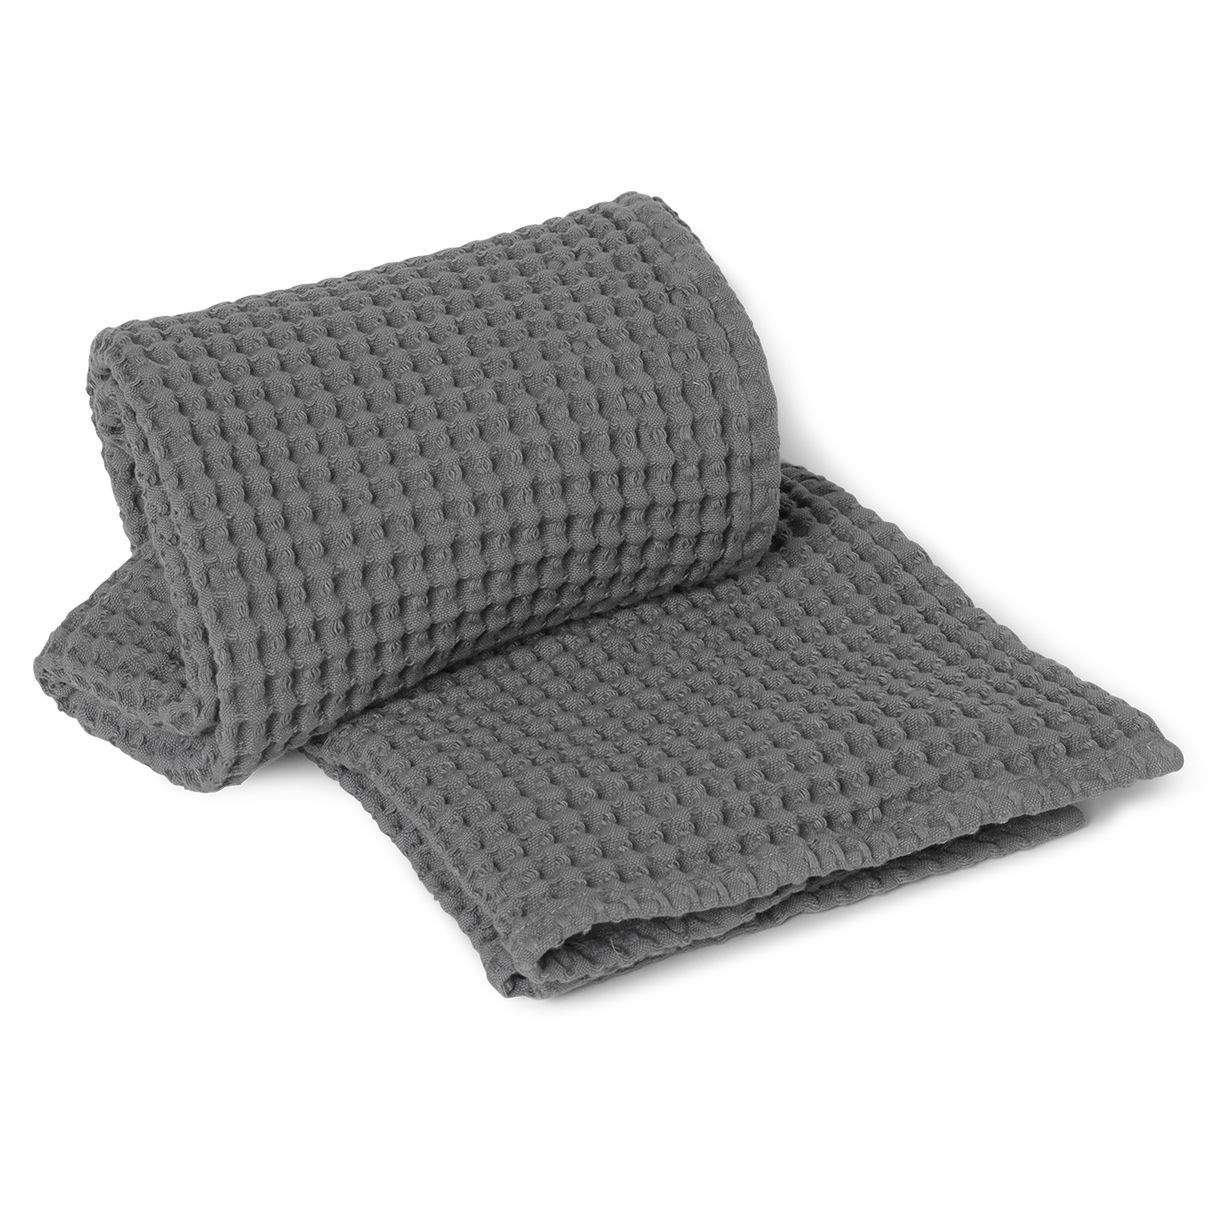 Handtuch Bio Baumwolle grau von Ferm Living online kaufen bei NordicNest de